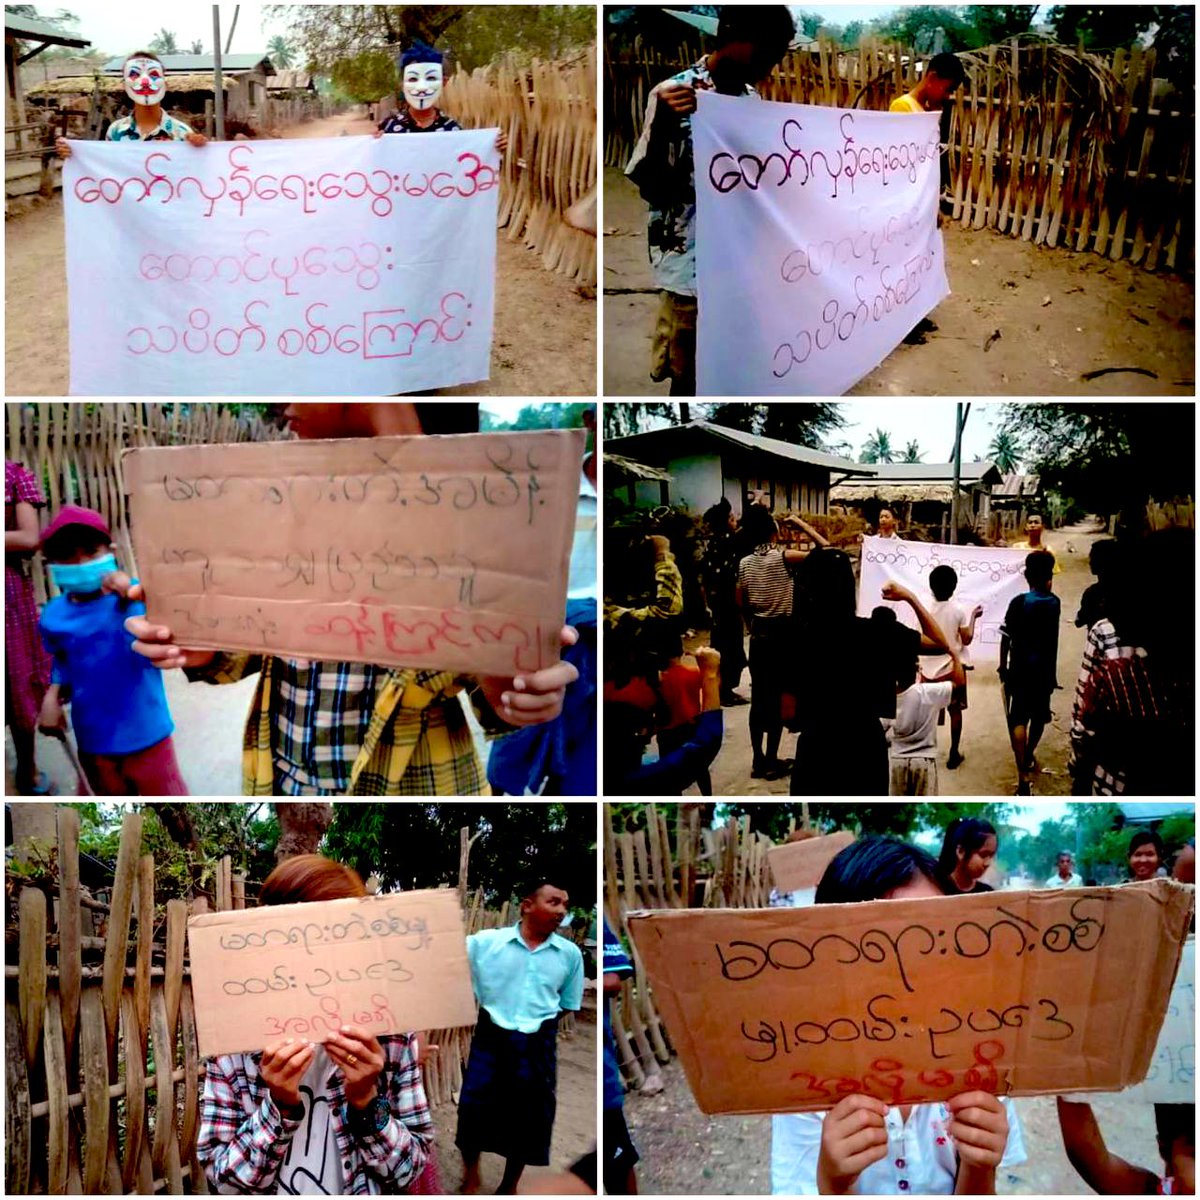 “တော်လှန်ရေးသွေးမအေးတောင်ပုသွေး” strike column marched & protested together with students & local residents and shouted slogans against the unjustified military service of the Military Council in #Yinmarbin Twp,#Sagaing Div on Apr 13.
#WhatsHappeninglnMyanmar 
#2024Apr13Coup